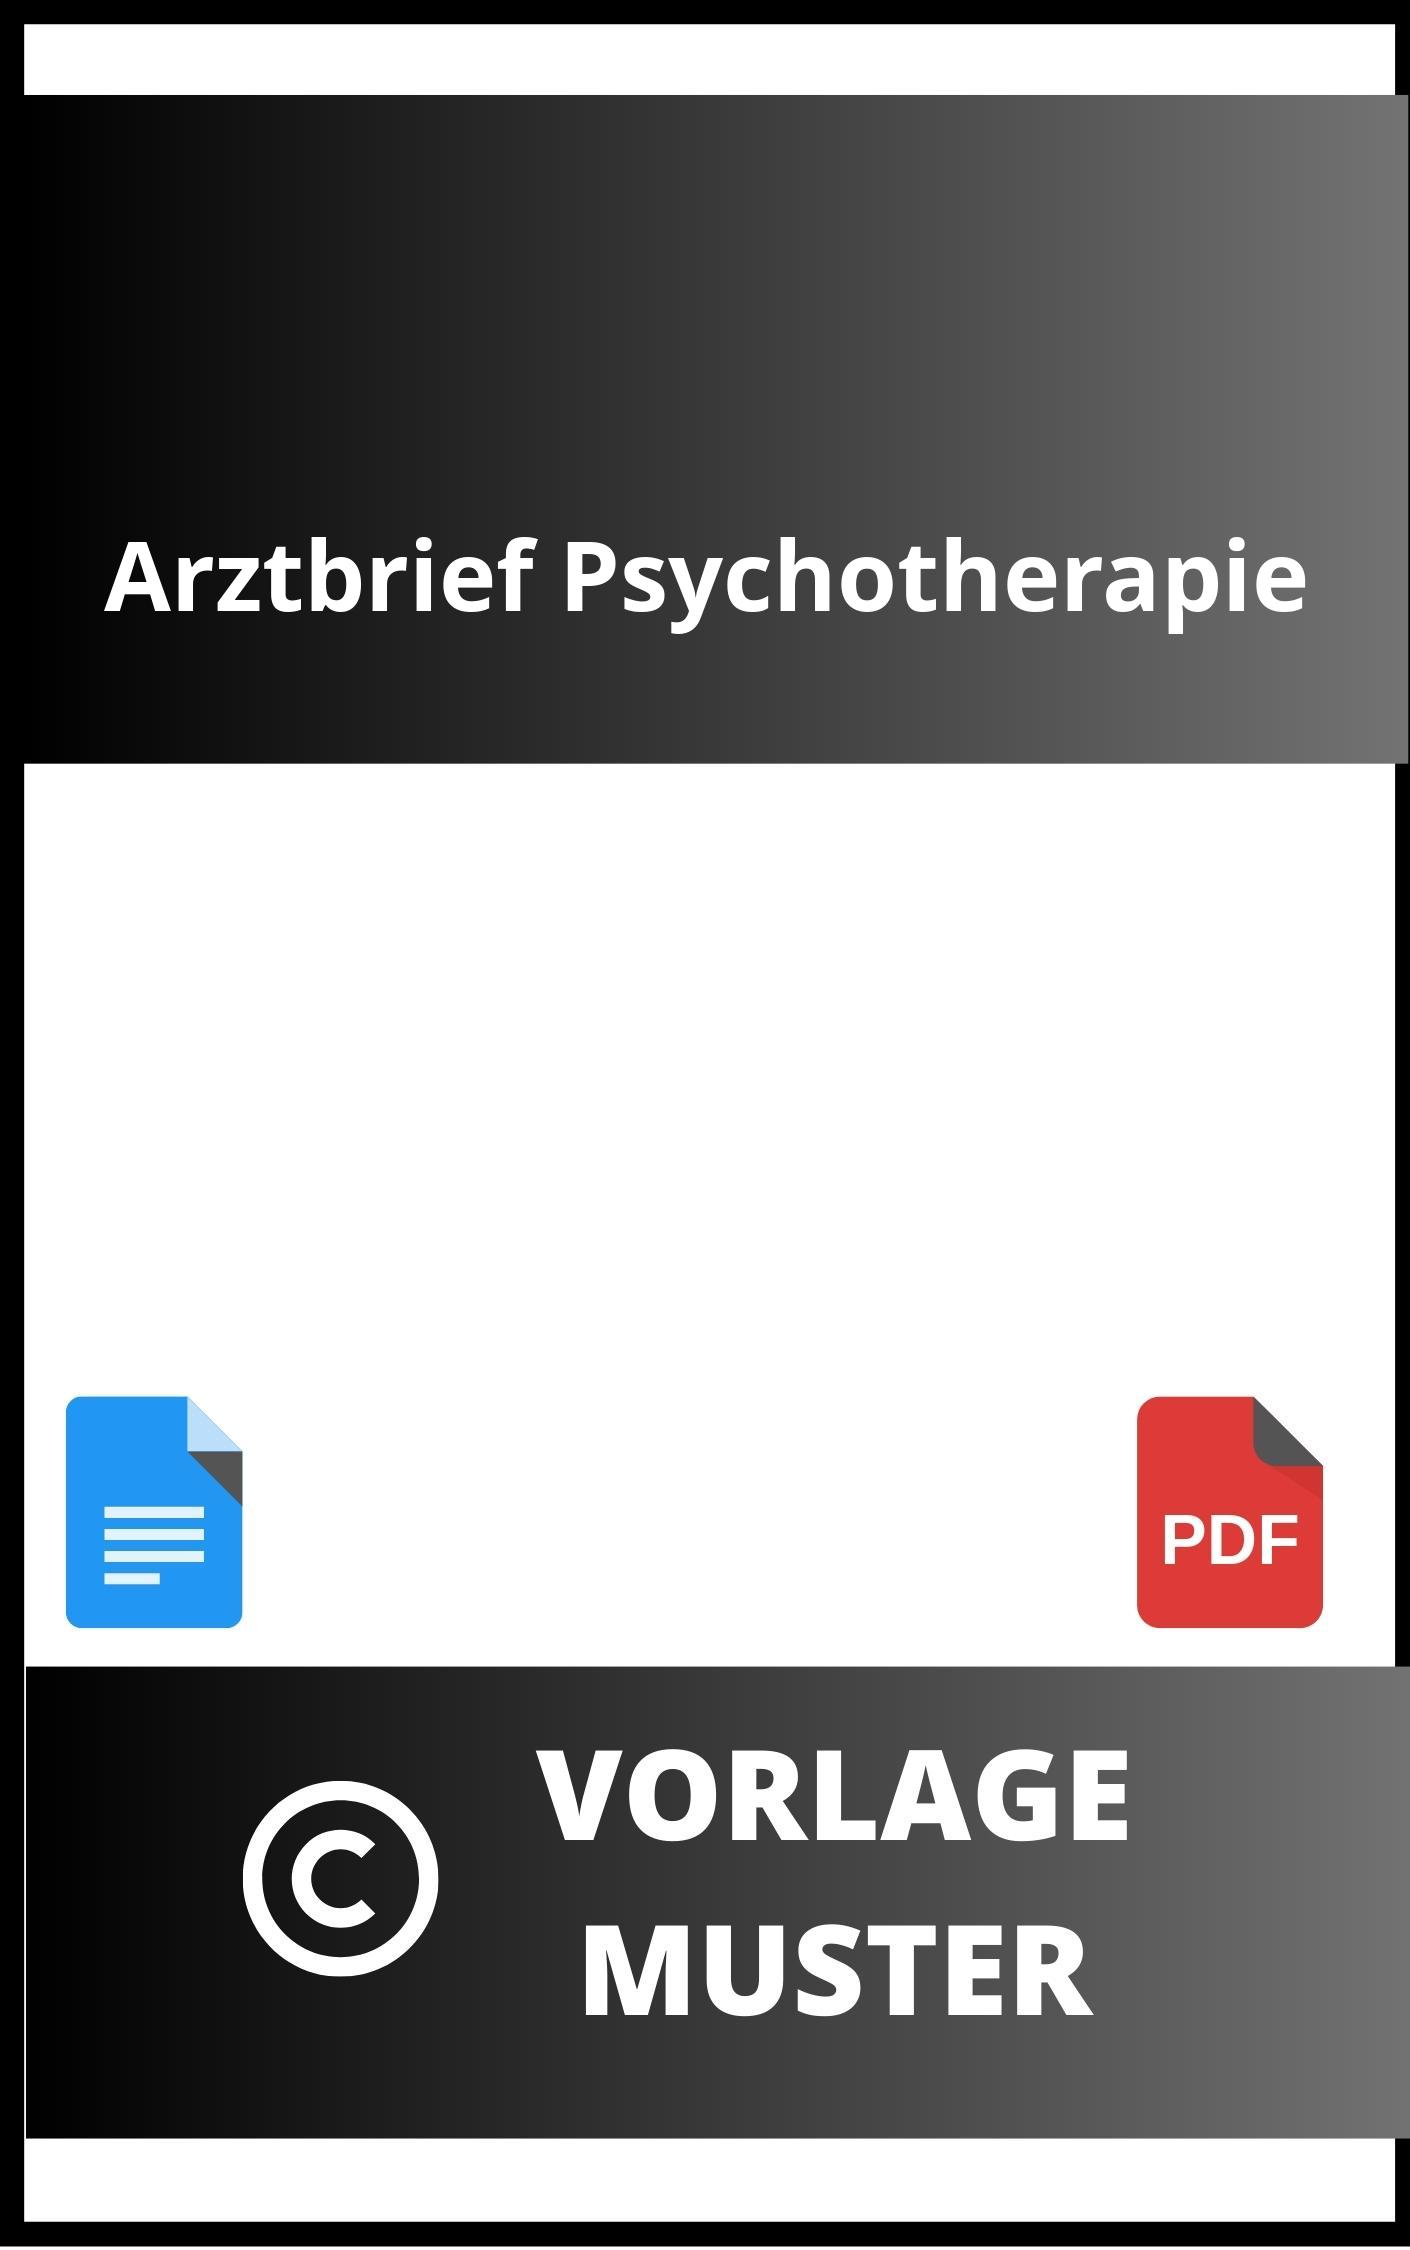 Arztbrief Psychotherapie